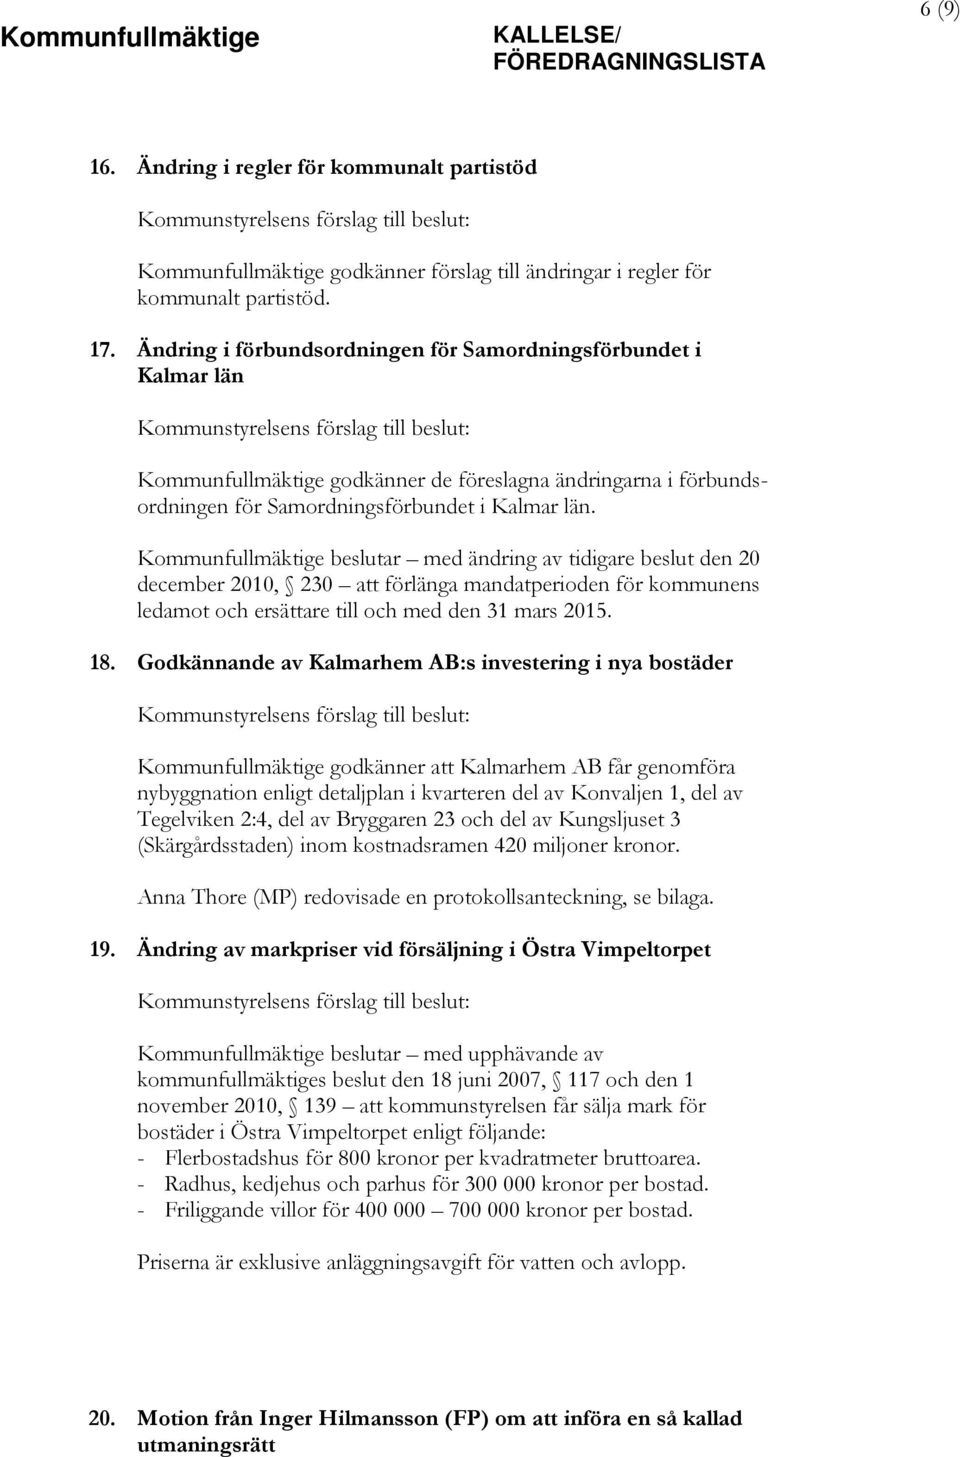 Ändring i förbundsordningen för Samordningsförbundet i Kalmar län Kommunstyrelsens förslag till beslut: Kommunfullmäktige godkänner de föreslagna ändringarna i förbundsordningen för